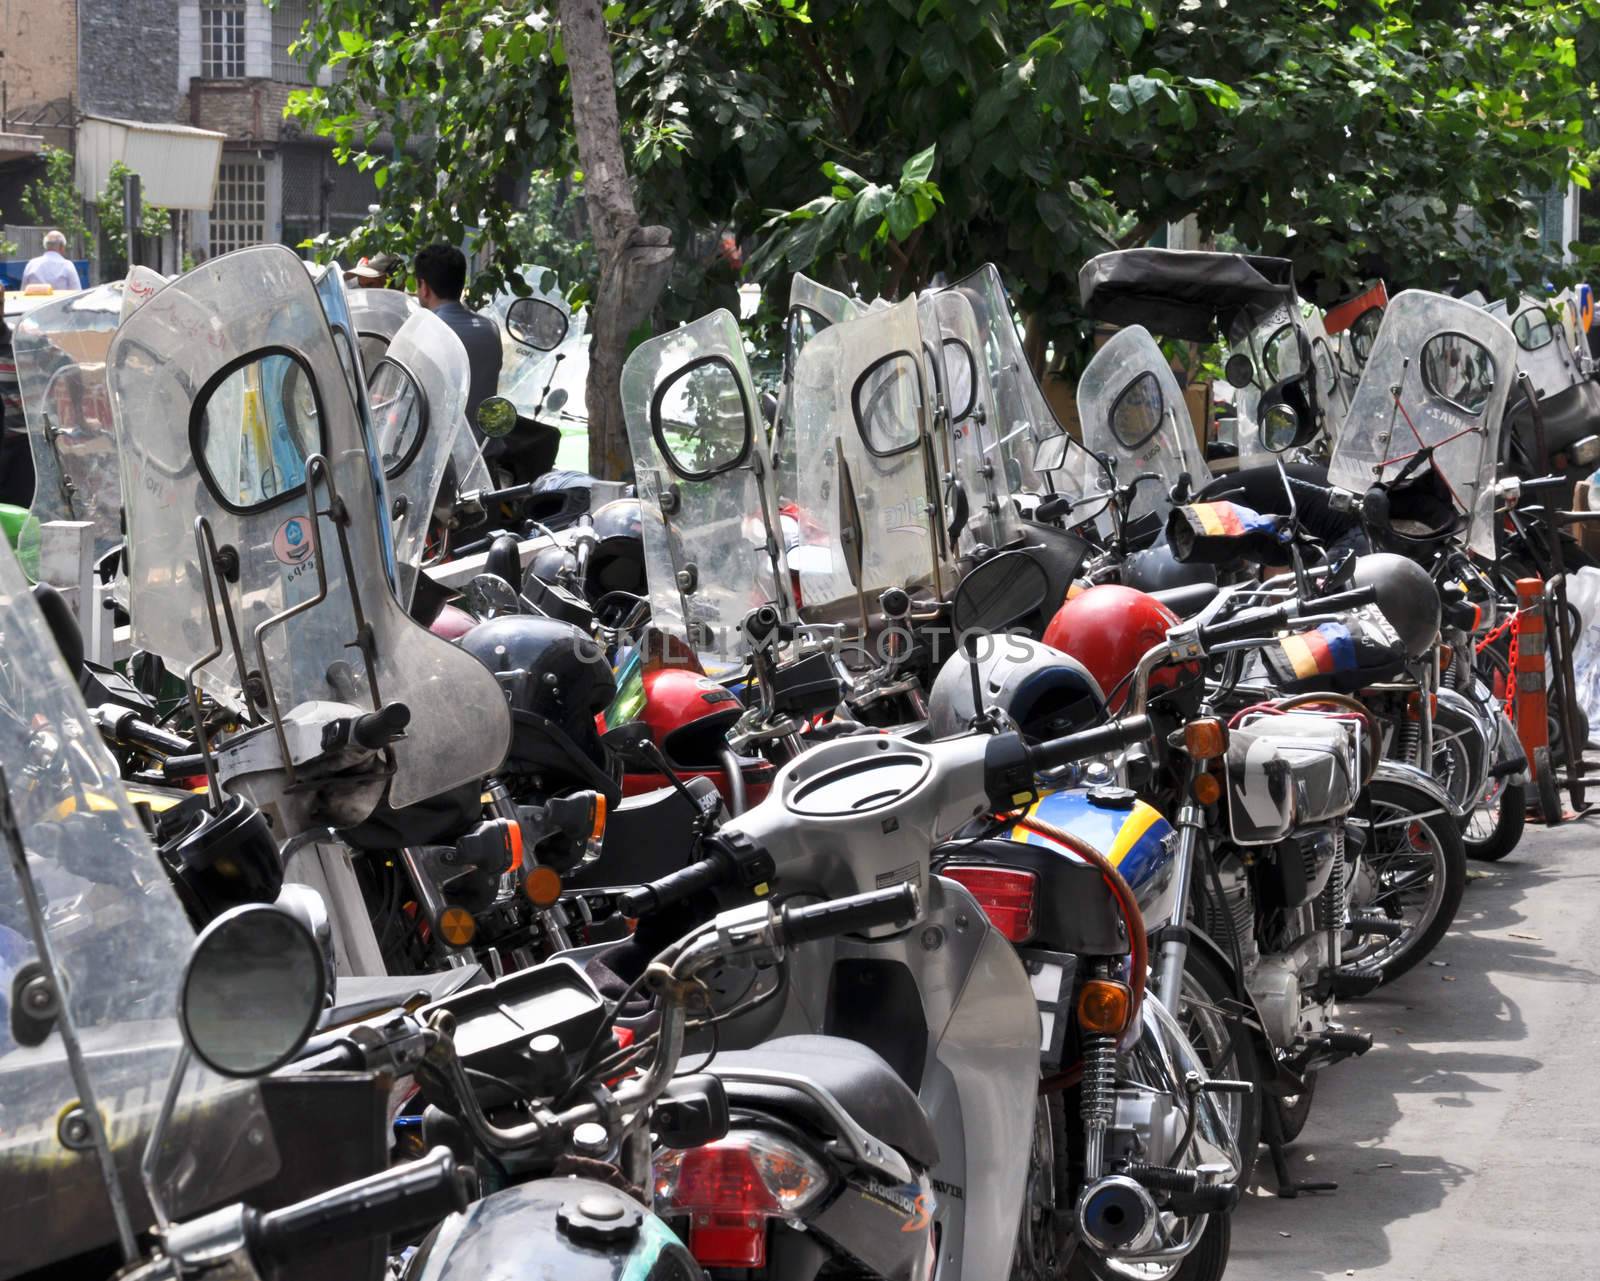 a lot of mopeds parked Tehran, Iran by vlaru